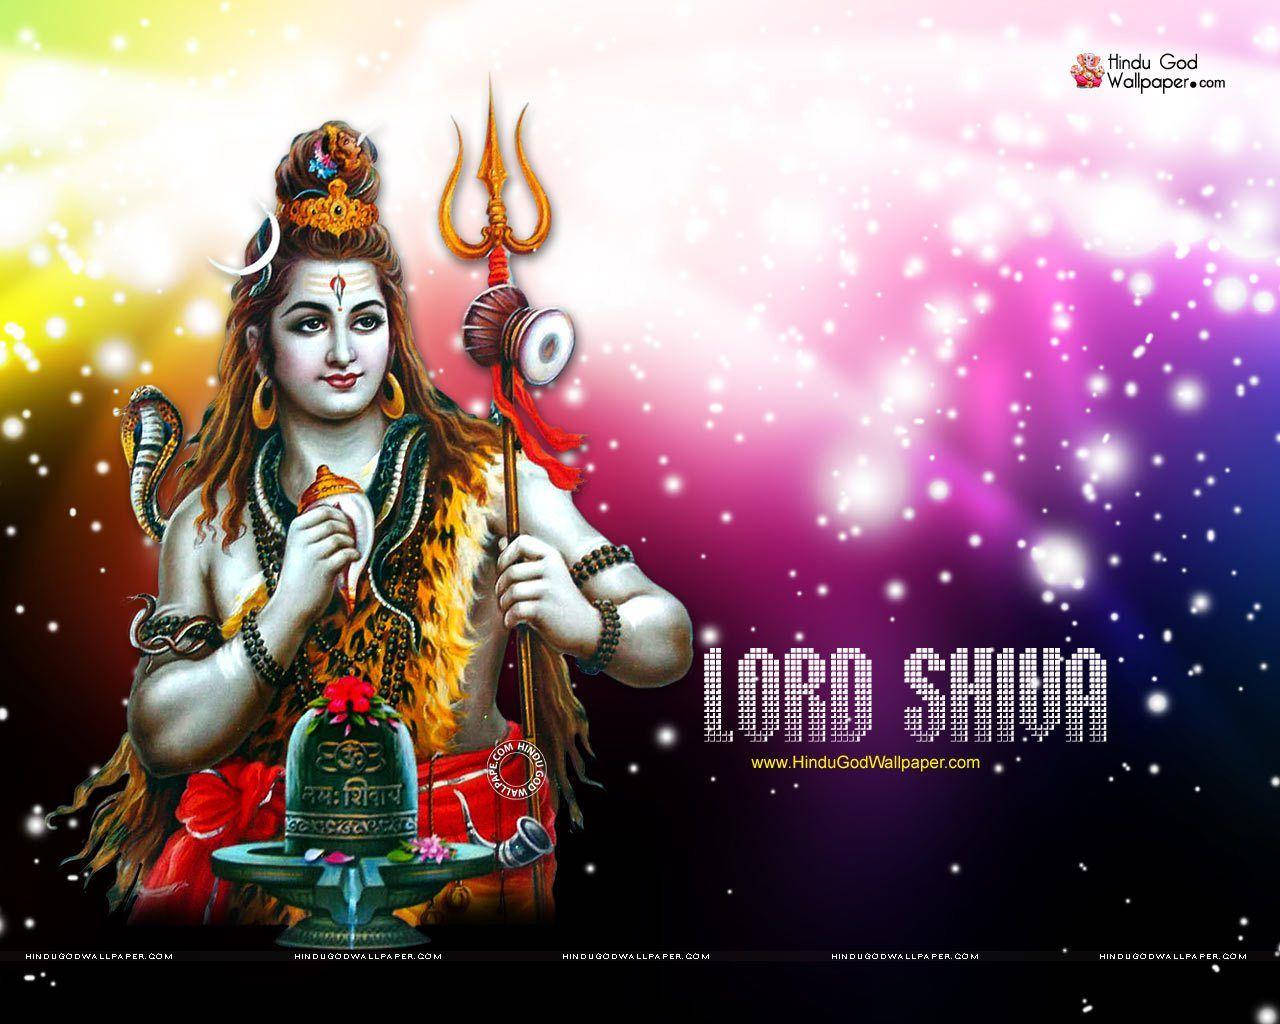 Shankarbhagwan Senhor Shiva Em Um Fundo Estrelado E Colorido. Papel de Parede